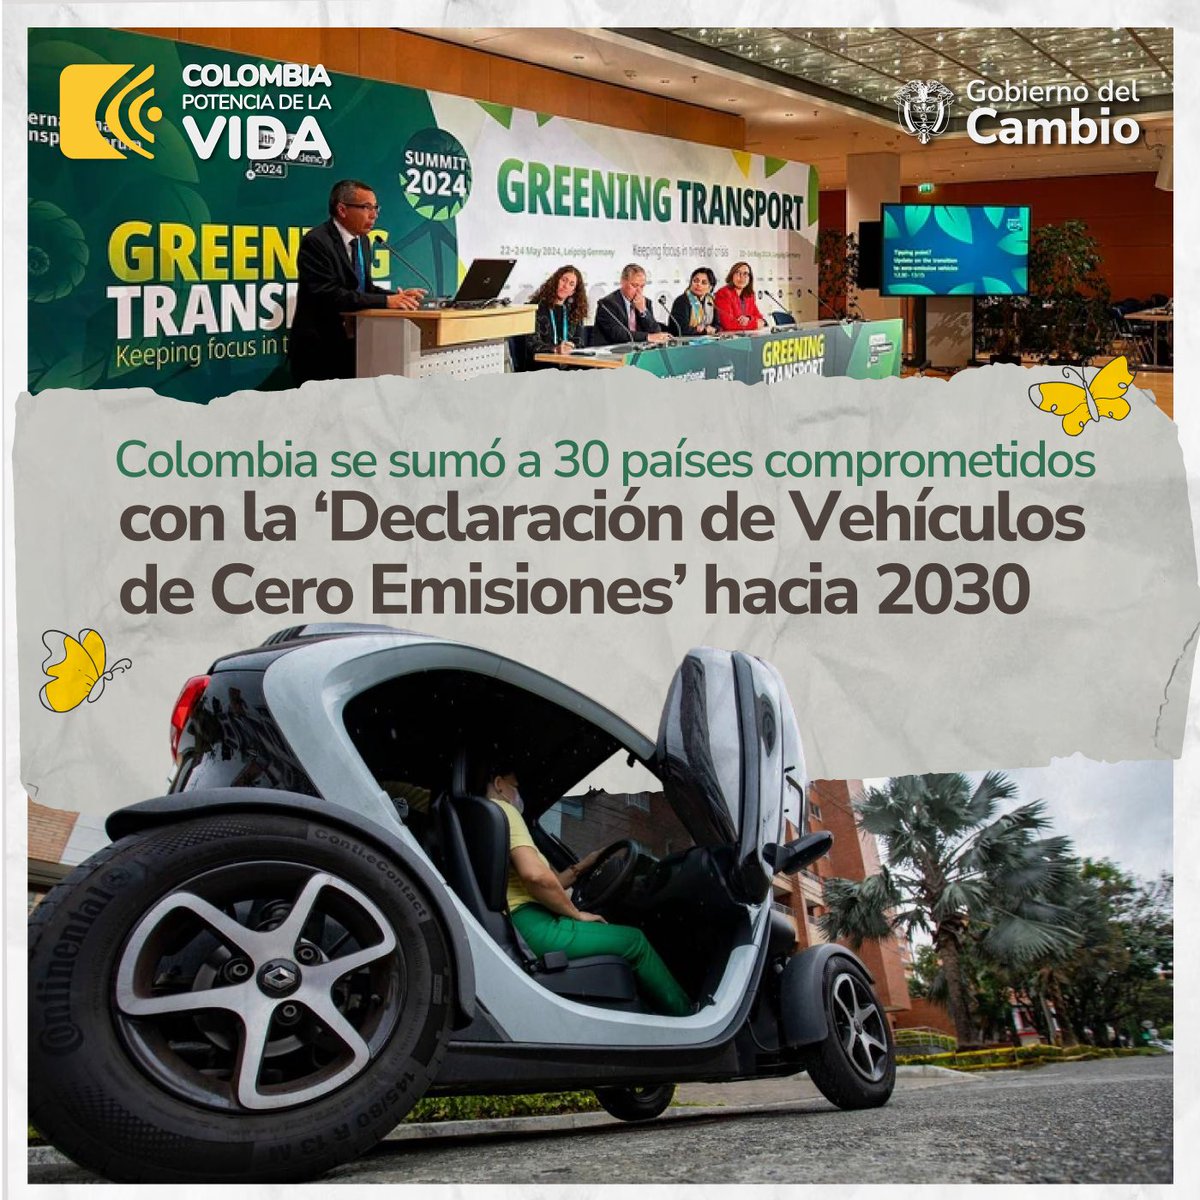 🚙 Con la firma de la ‘Declaración de Vehículos de Cero Emisiones’, Colombia se comprometió ante el mundo para acelerar la transición total de automóviles, camperos y camionetas a vehículos cero emisiones. 🇨🇴 ¡El #GobiernoDelCambio sigue trabajando para proteger la Vida y el